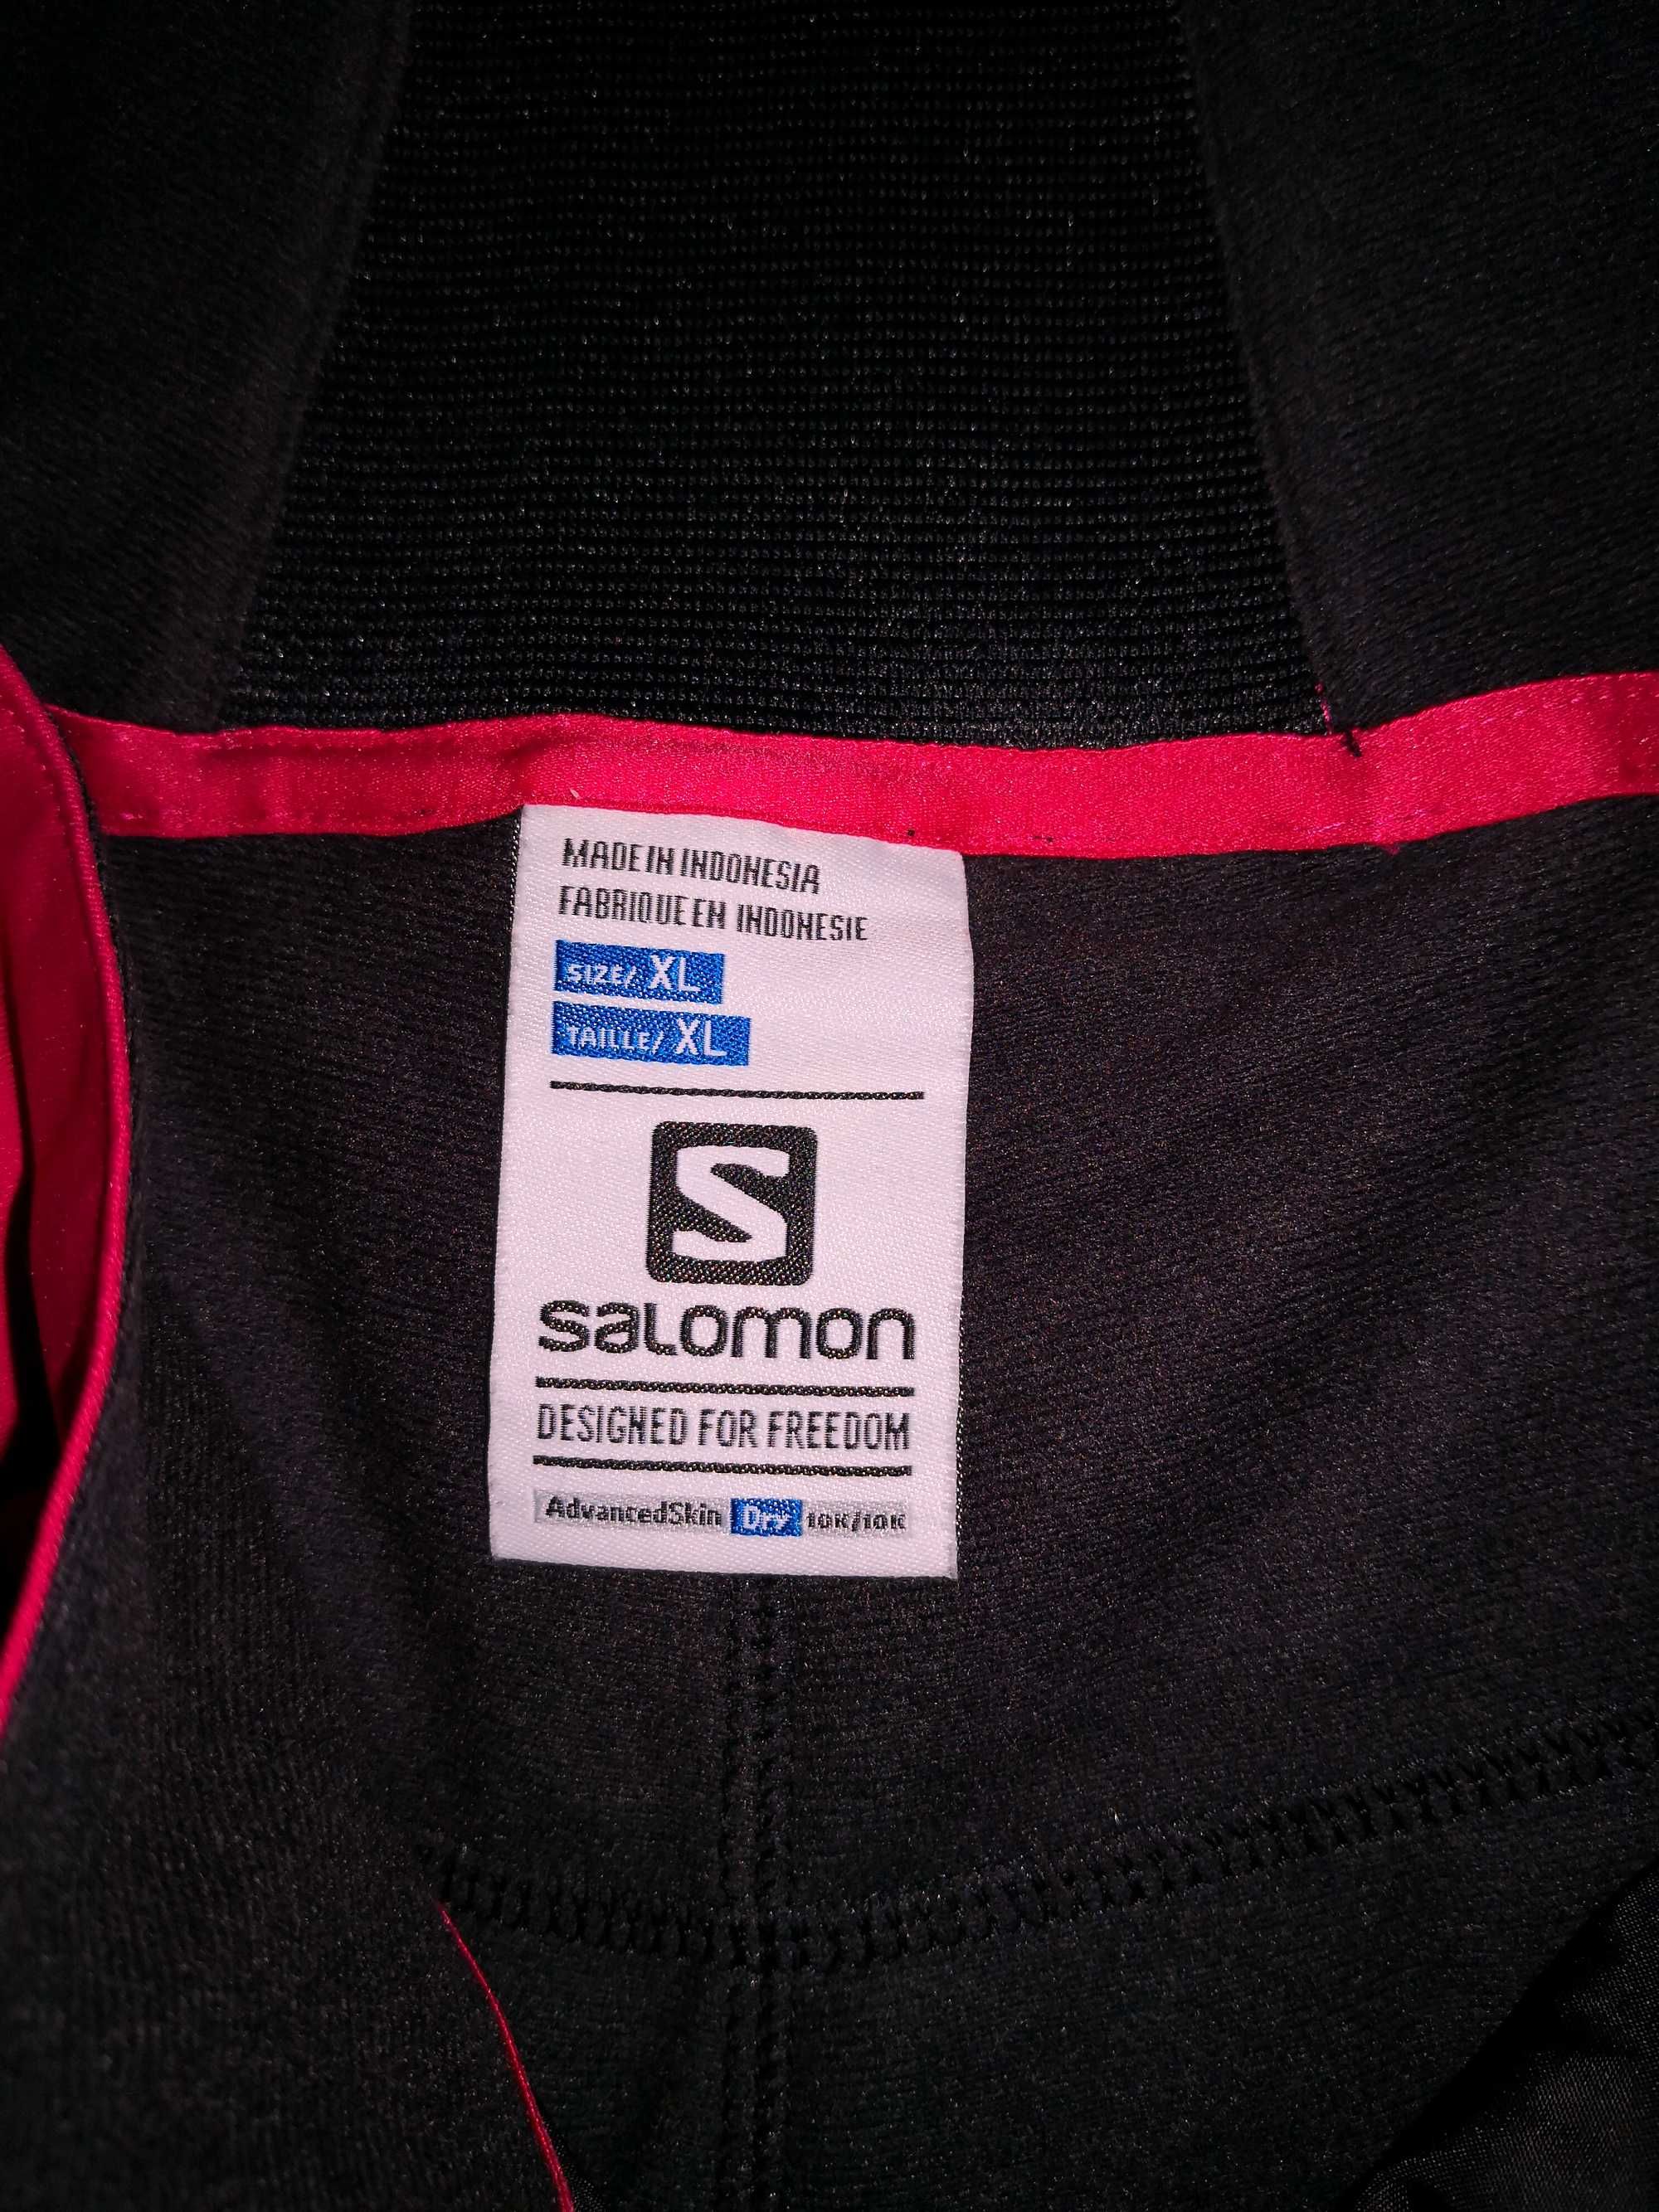 Spodnie narciarskie SALOMON, damskie XL, NOWE